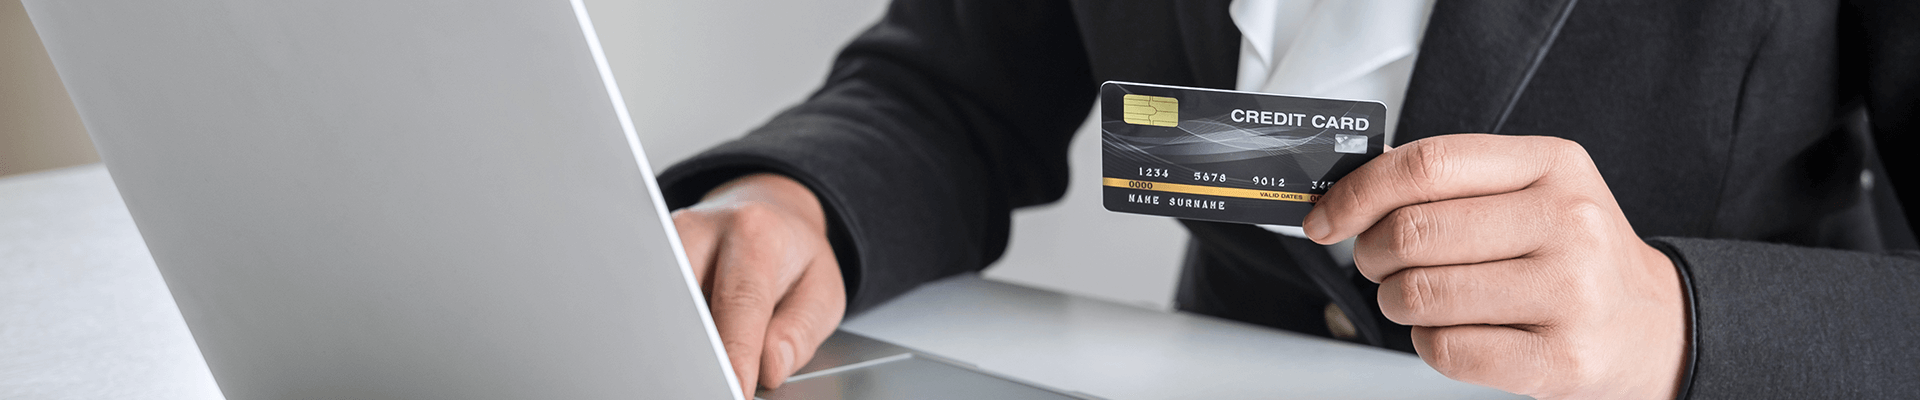 Una mano sosteniendo una tarjeta de pago en frente de un computador